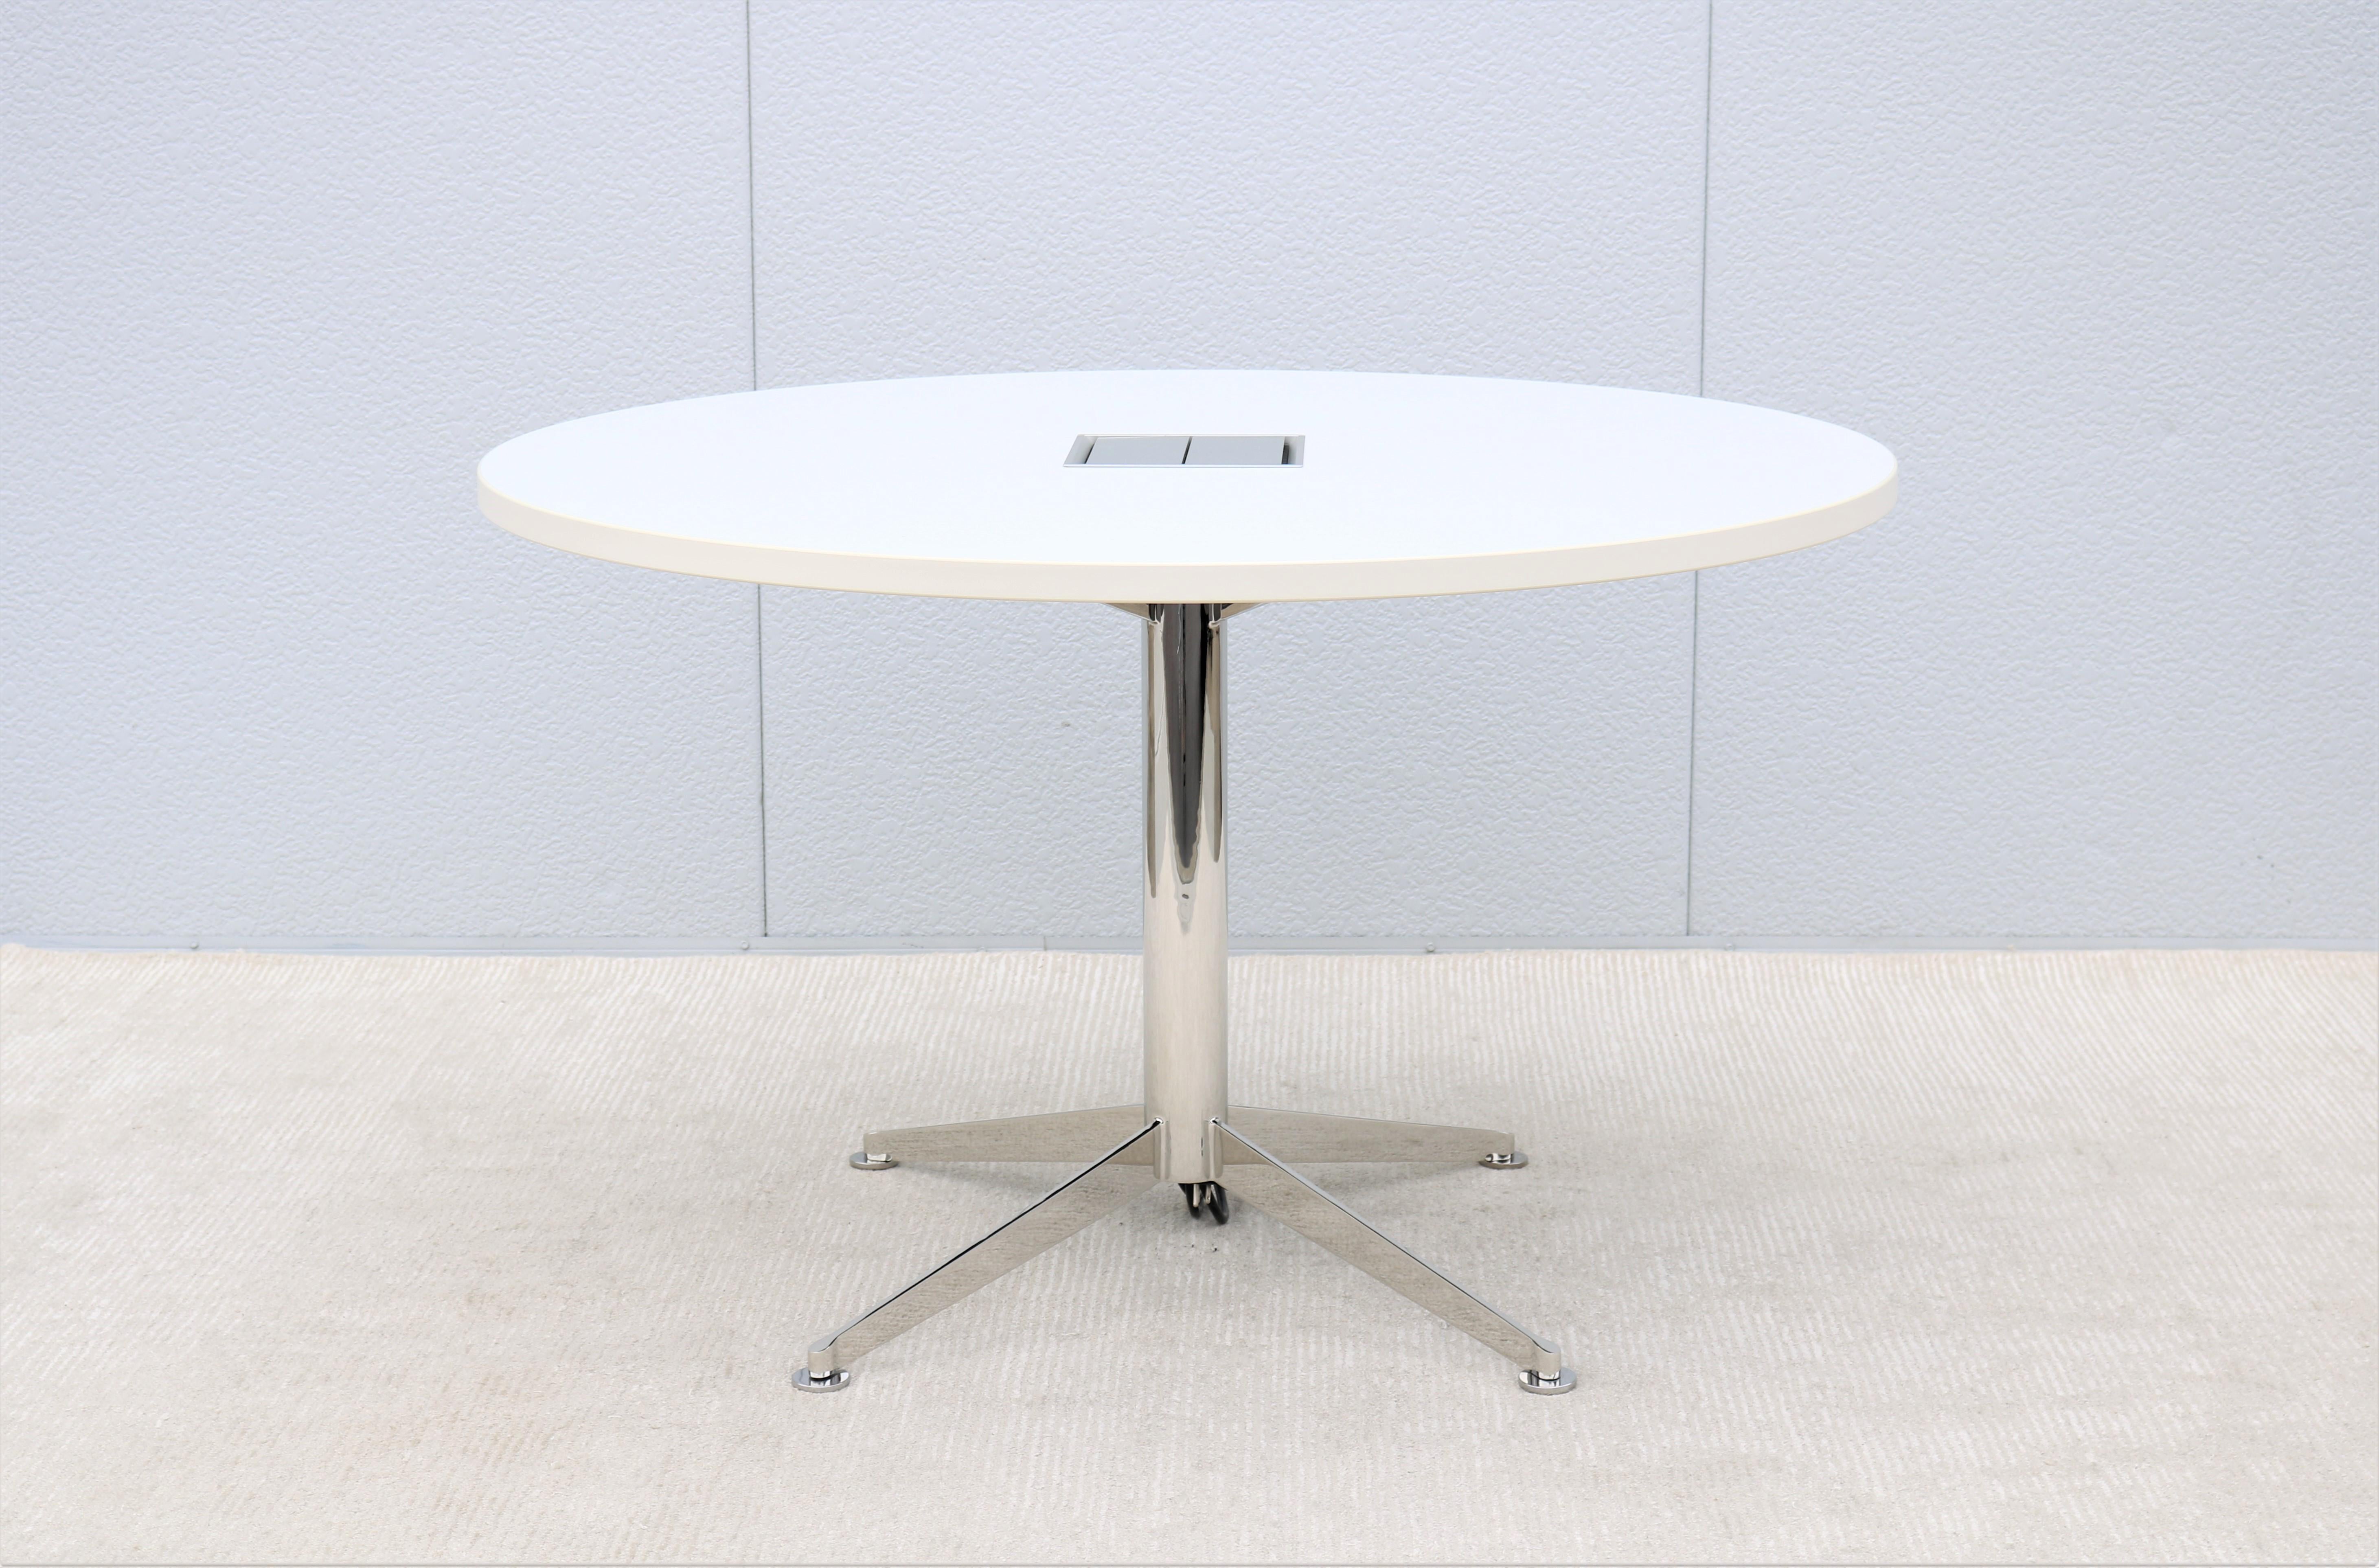 Eleganter und schlichter Circuit Konferenztisch oder Arbeitstisch von Bernhardt Design.
Dieser fabelhafte Tisch hat die Stärke und Langlebigkeit, um eine zuverlässige Leistung zu erbringen.
Die moderne Schönheit und das intelligente Design des